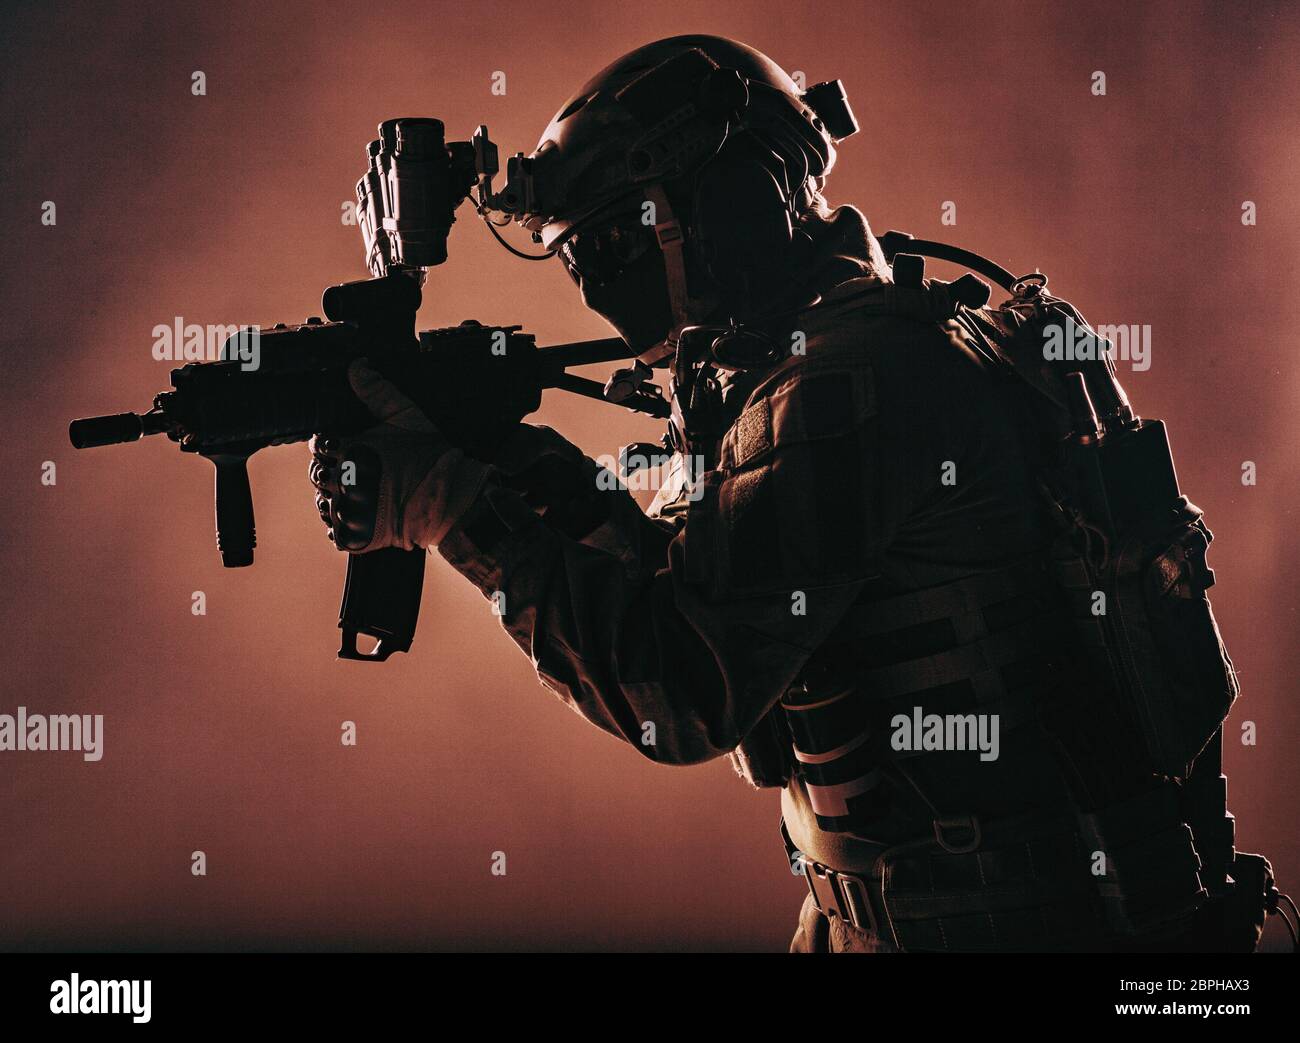 Armee Soldat, Counter Terrorist squad Fighter, militärisches Unternehmen Söldner in Munition und Schutzkleidung, Helm mit Nachtsichtgerät, mit dem Ziel, mit s Stockfoto